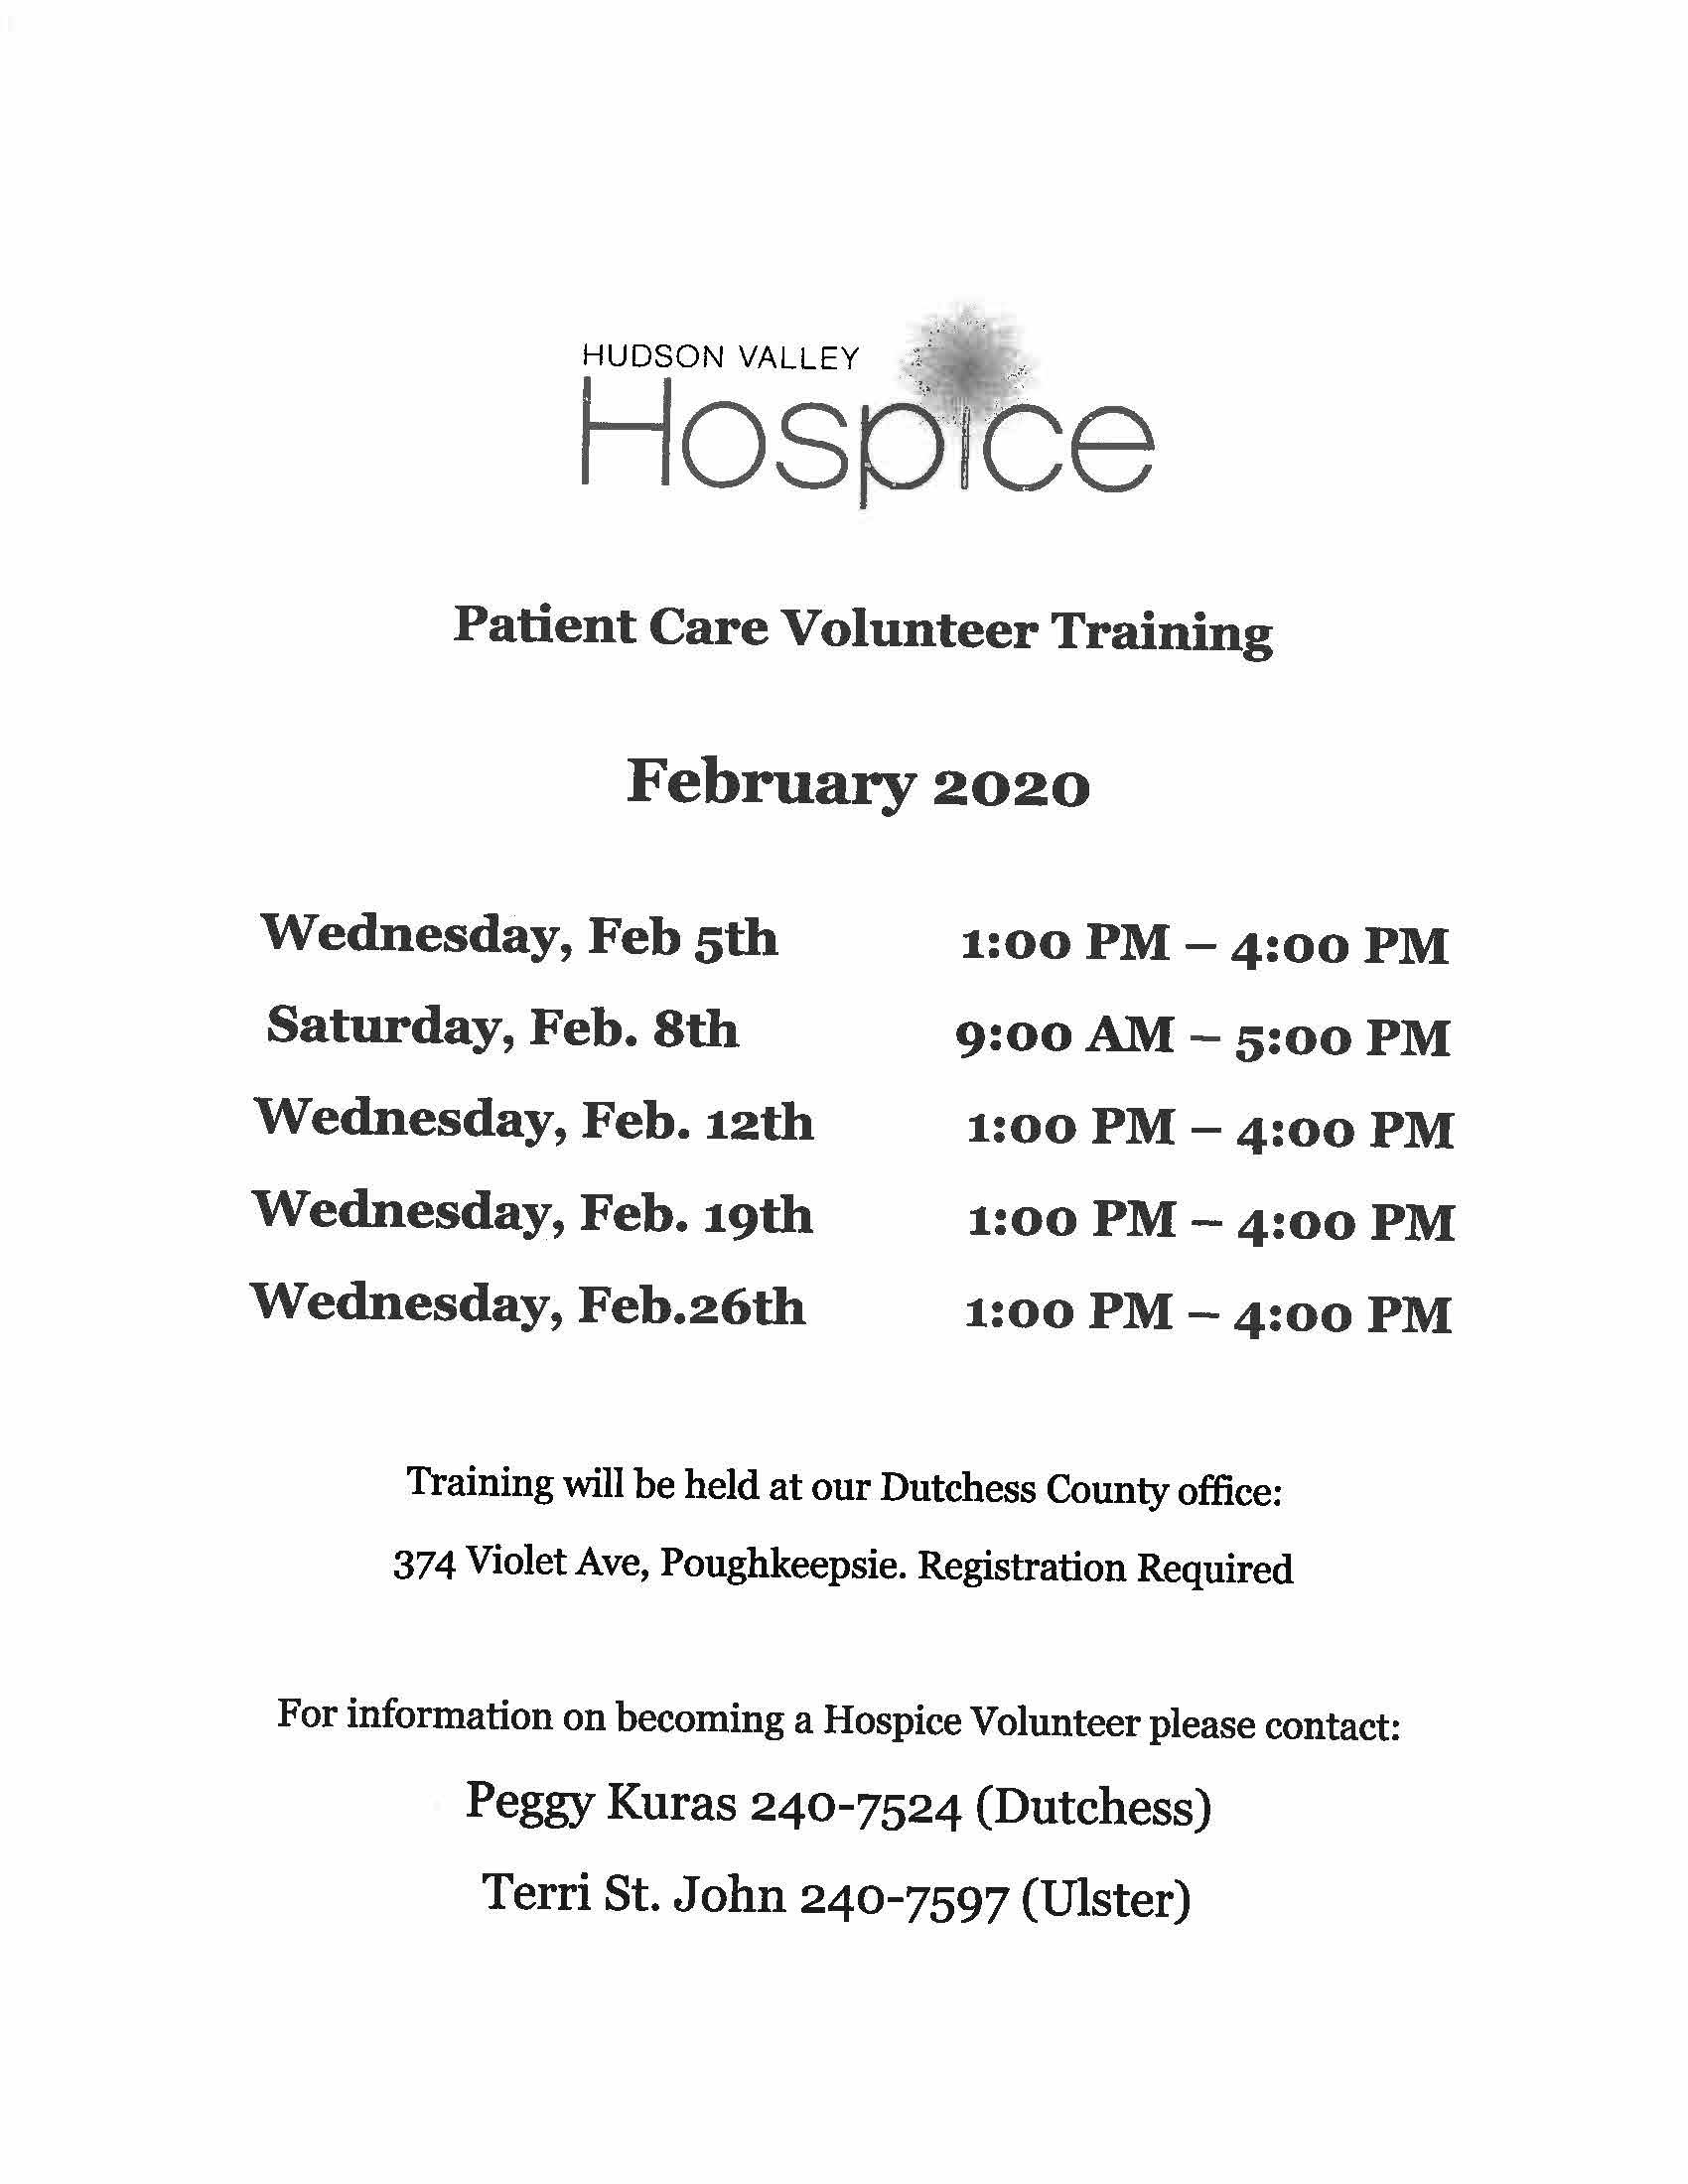 Hudson Valley Hospice Volunteer Training